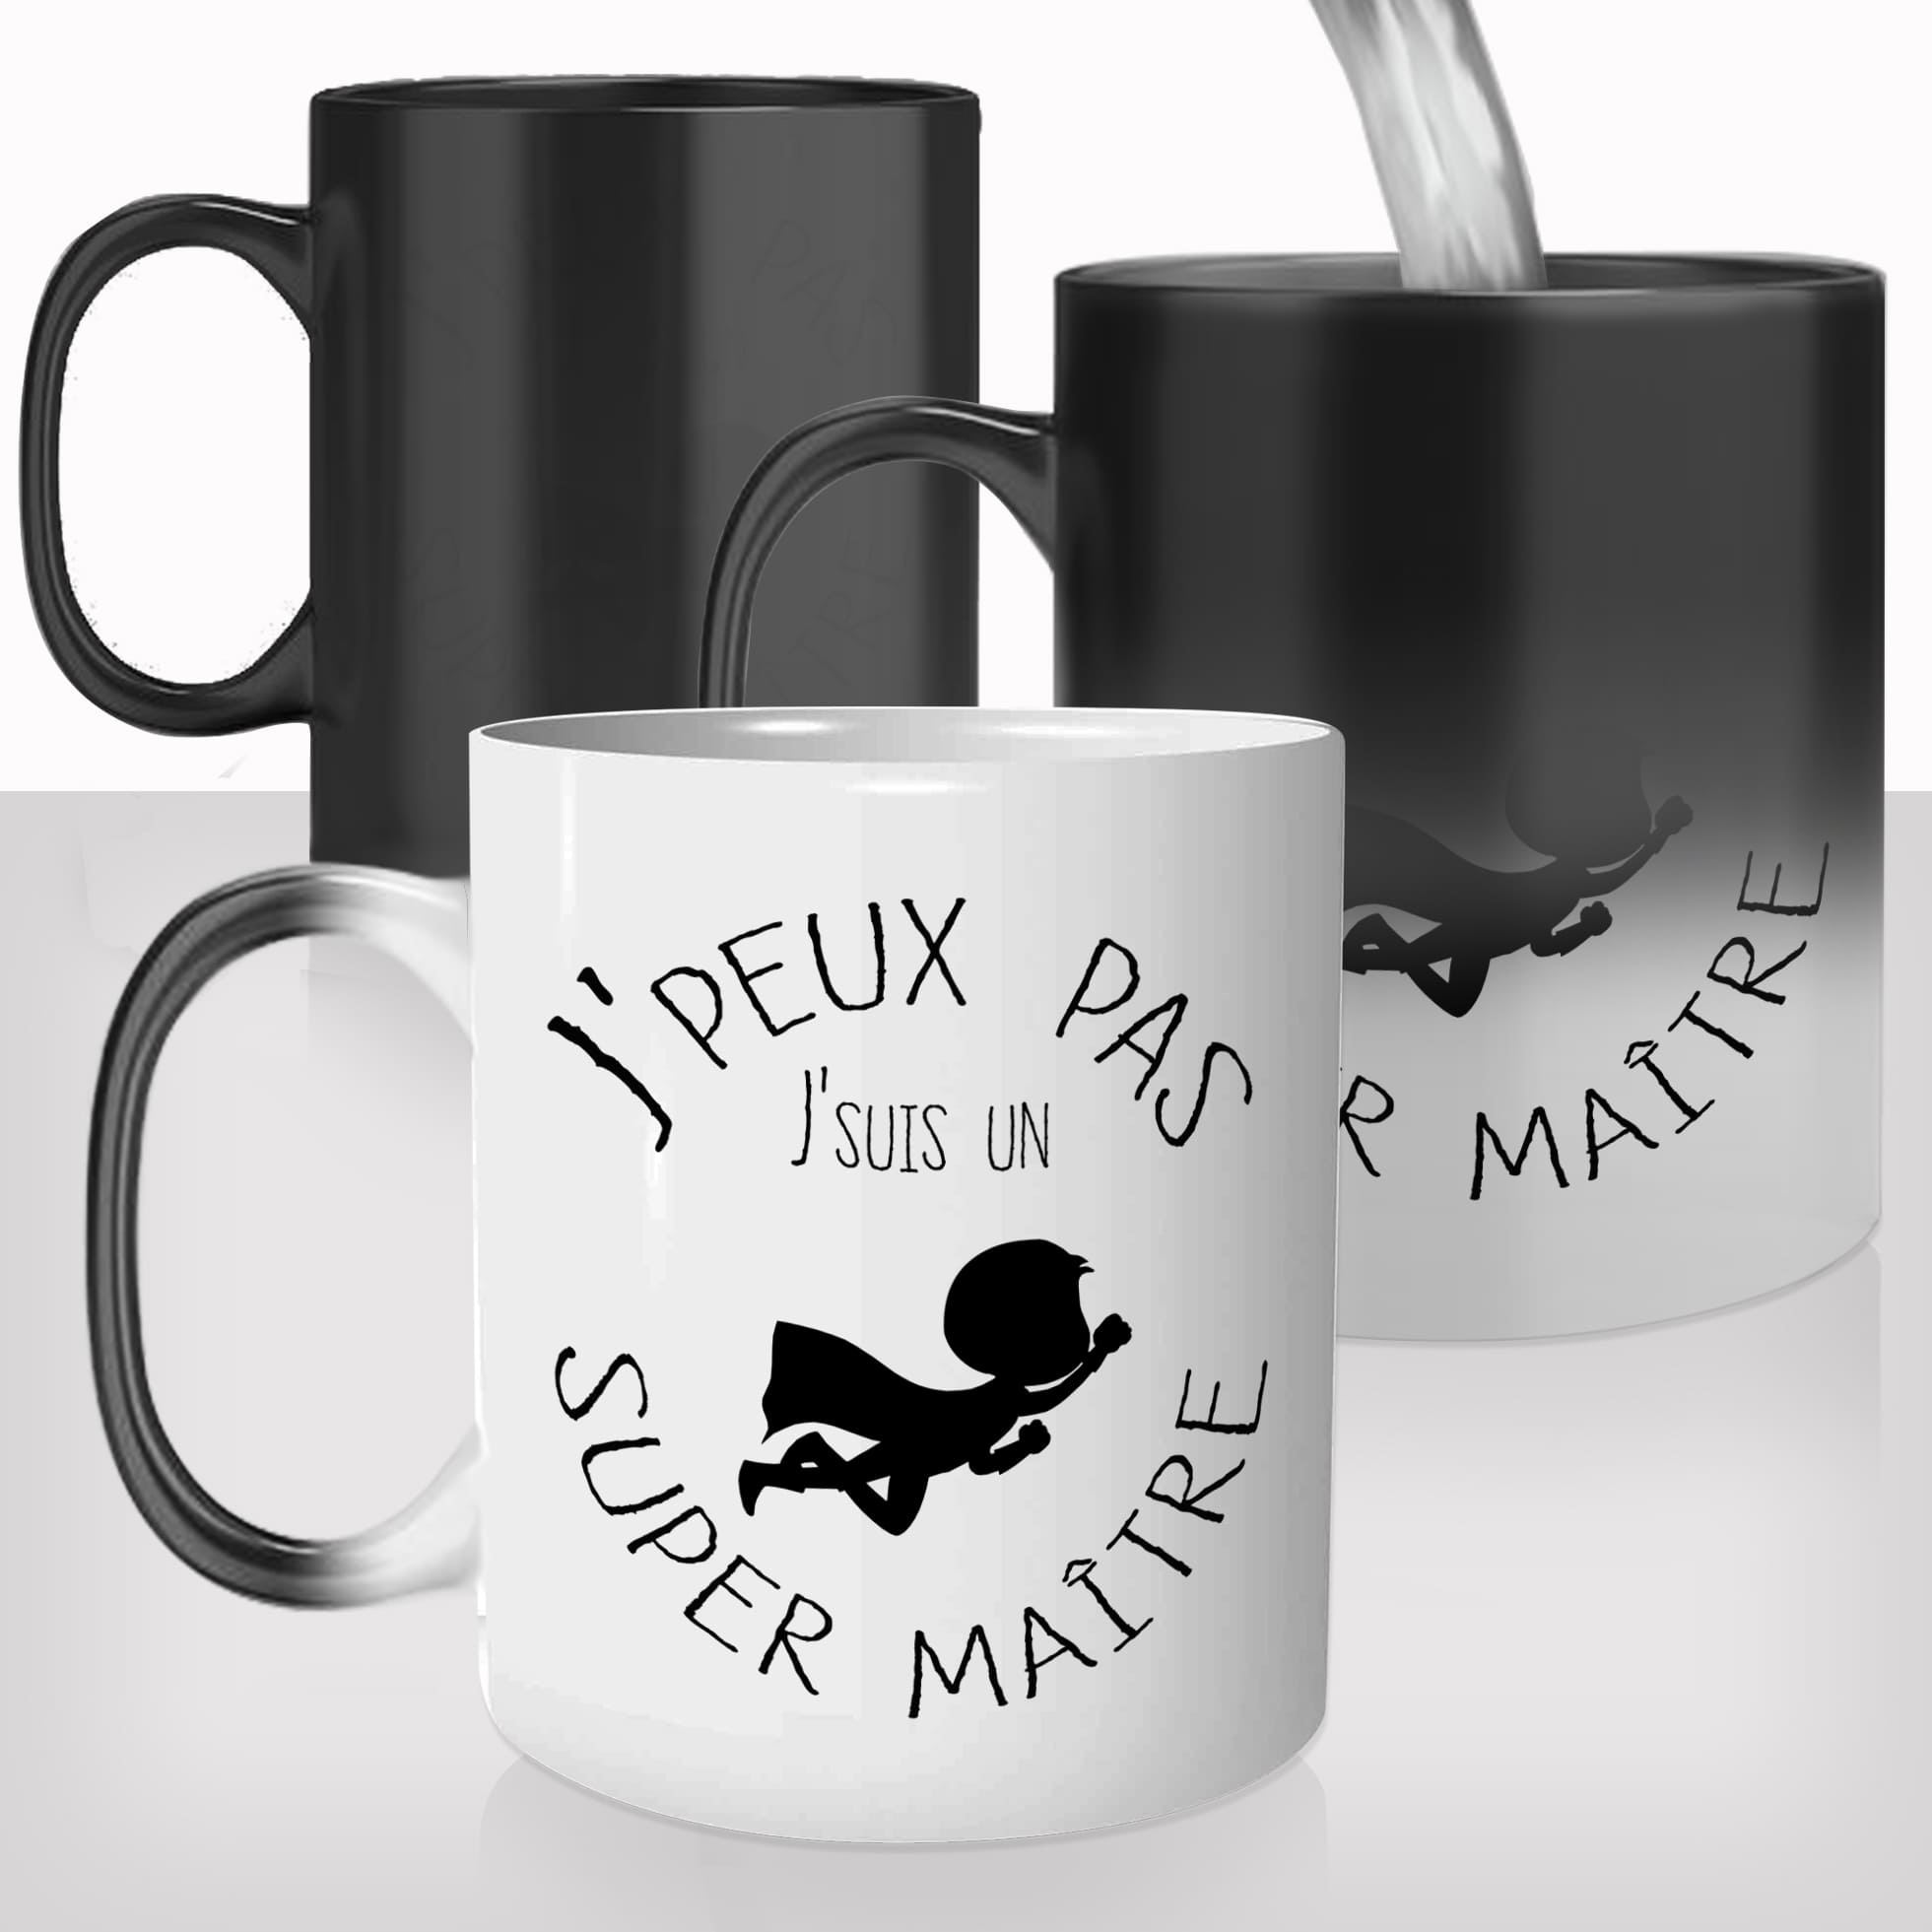 mug-magique-tasse-magic-thermoréactif-chauffant-personnalisé-jpeux-pas-super-maitre-ecole-merci-prenom-personnalisable-cadeau-original